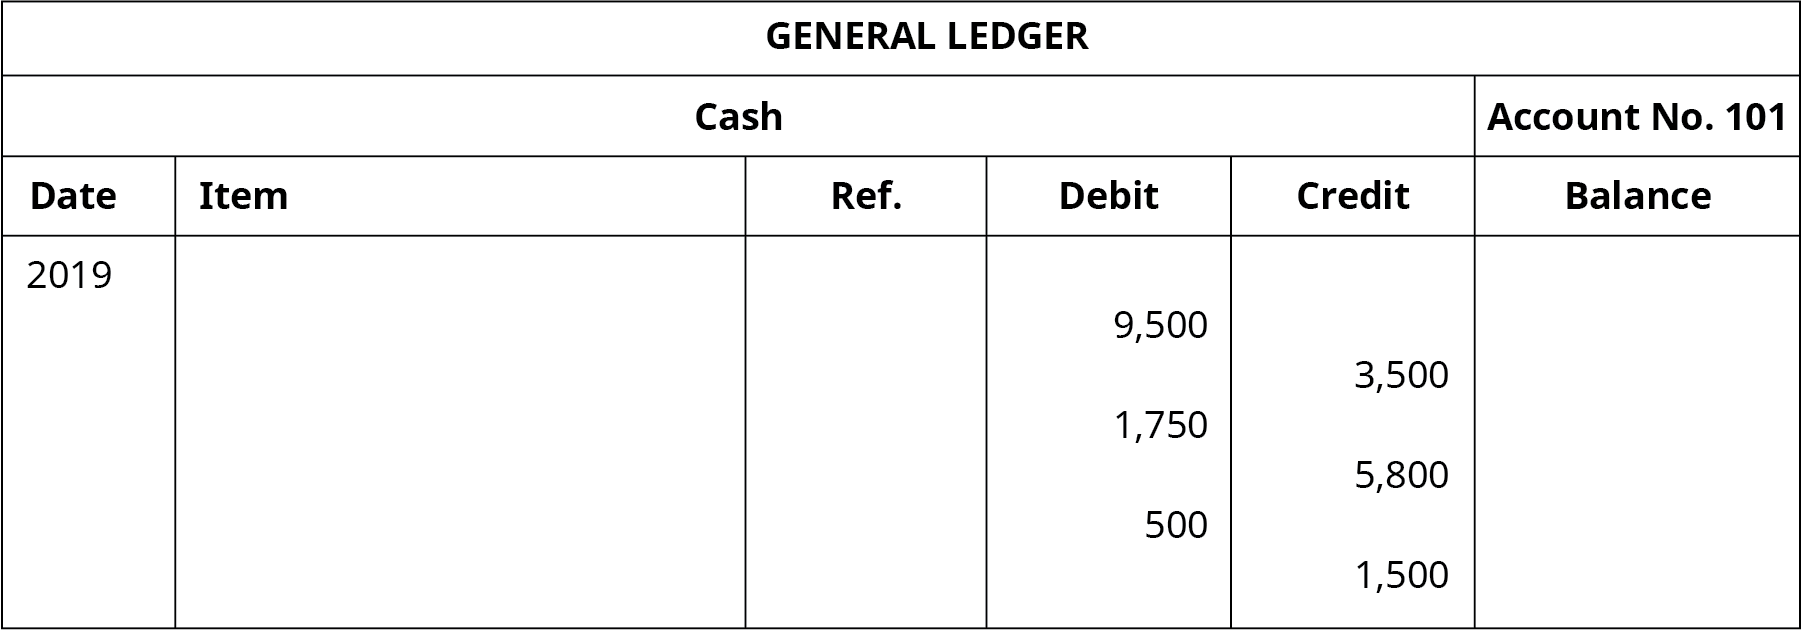 标题为 “现金账户编号101” 的总分类账，有六列。 日期：2019 年。 借记栏条目：9,500、1,750、500。 积分栏条目：3,500、5,800、1500。